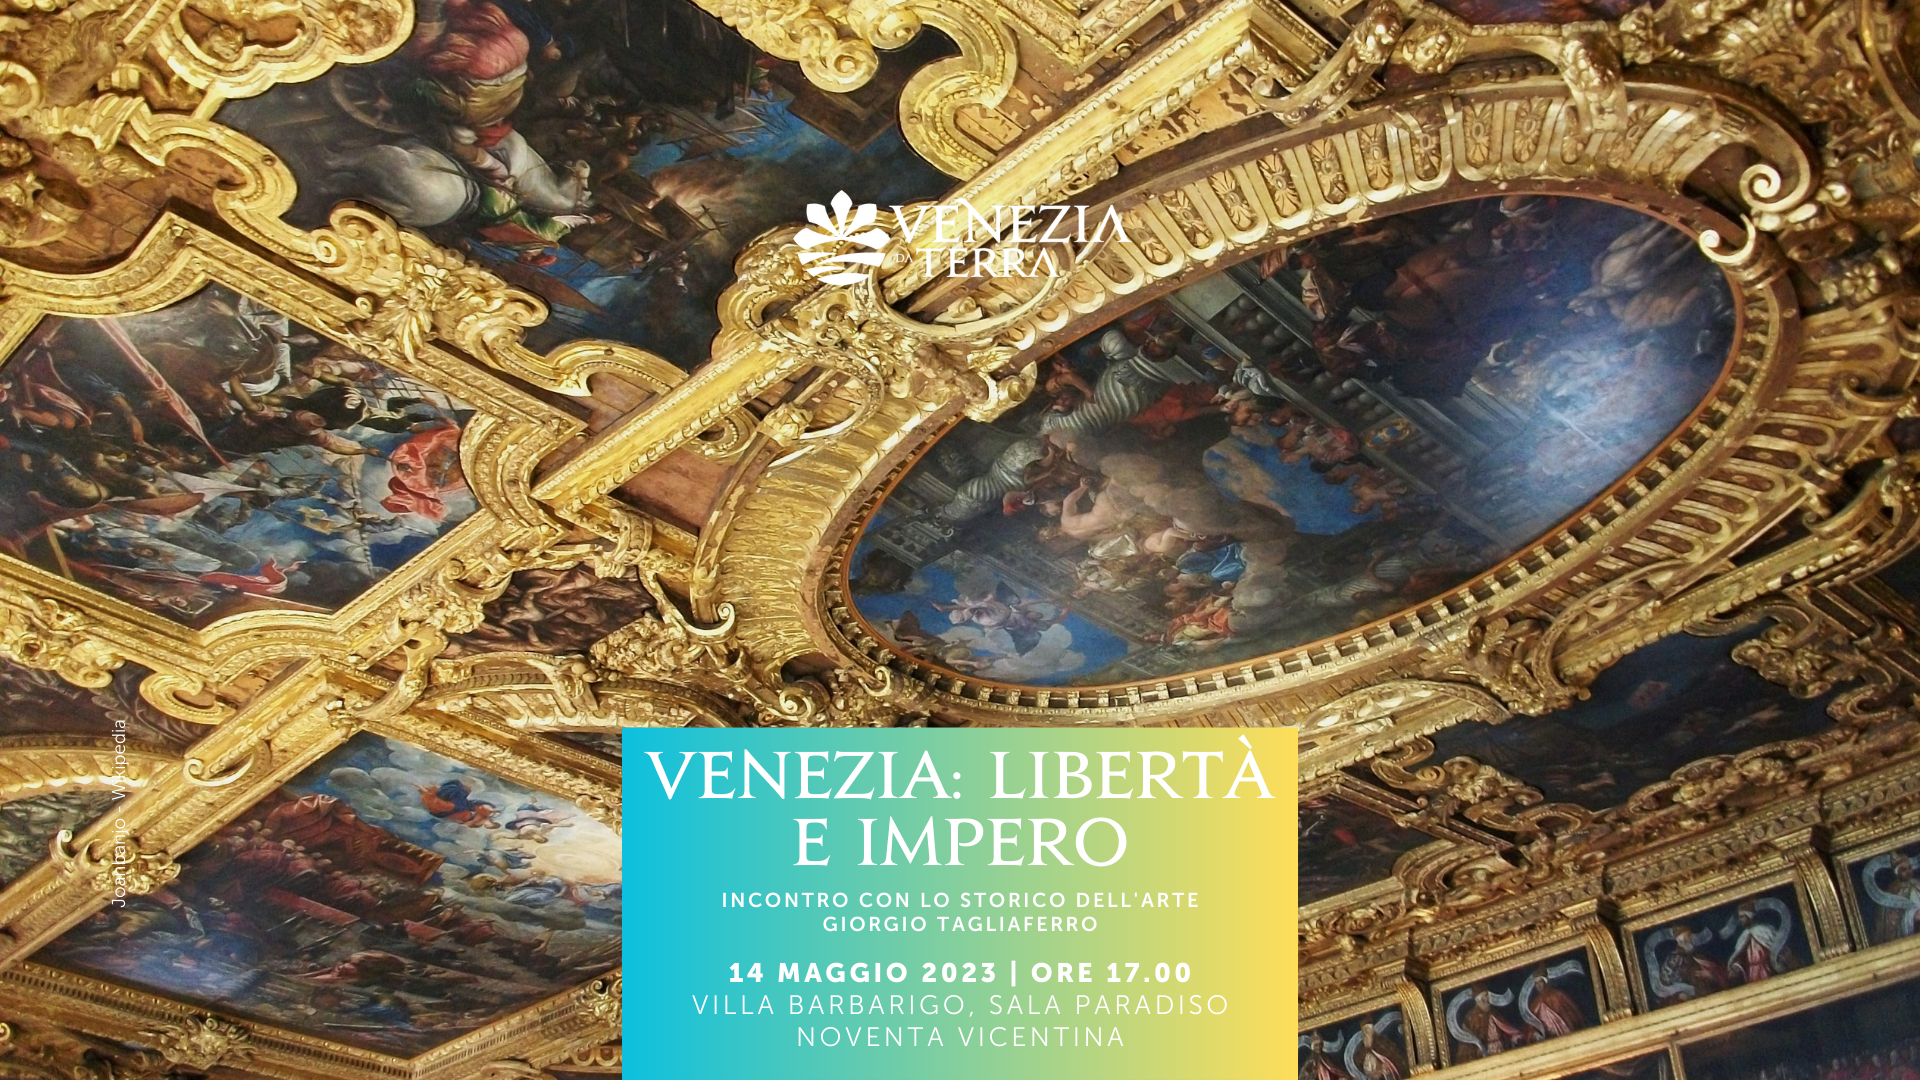 Venezia: libertà e impero. La decorazione pittorica cinquecentesca nella sala del Maggior Consiglio in Palazzo Ducale